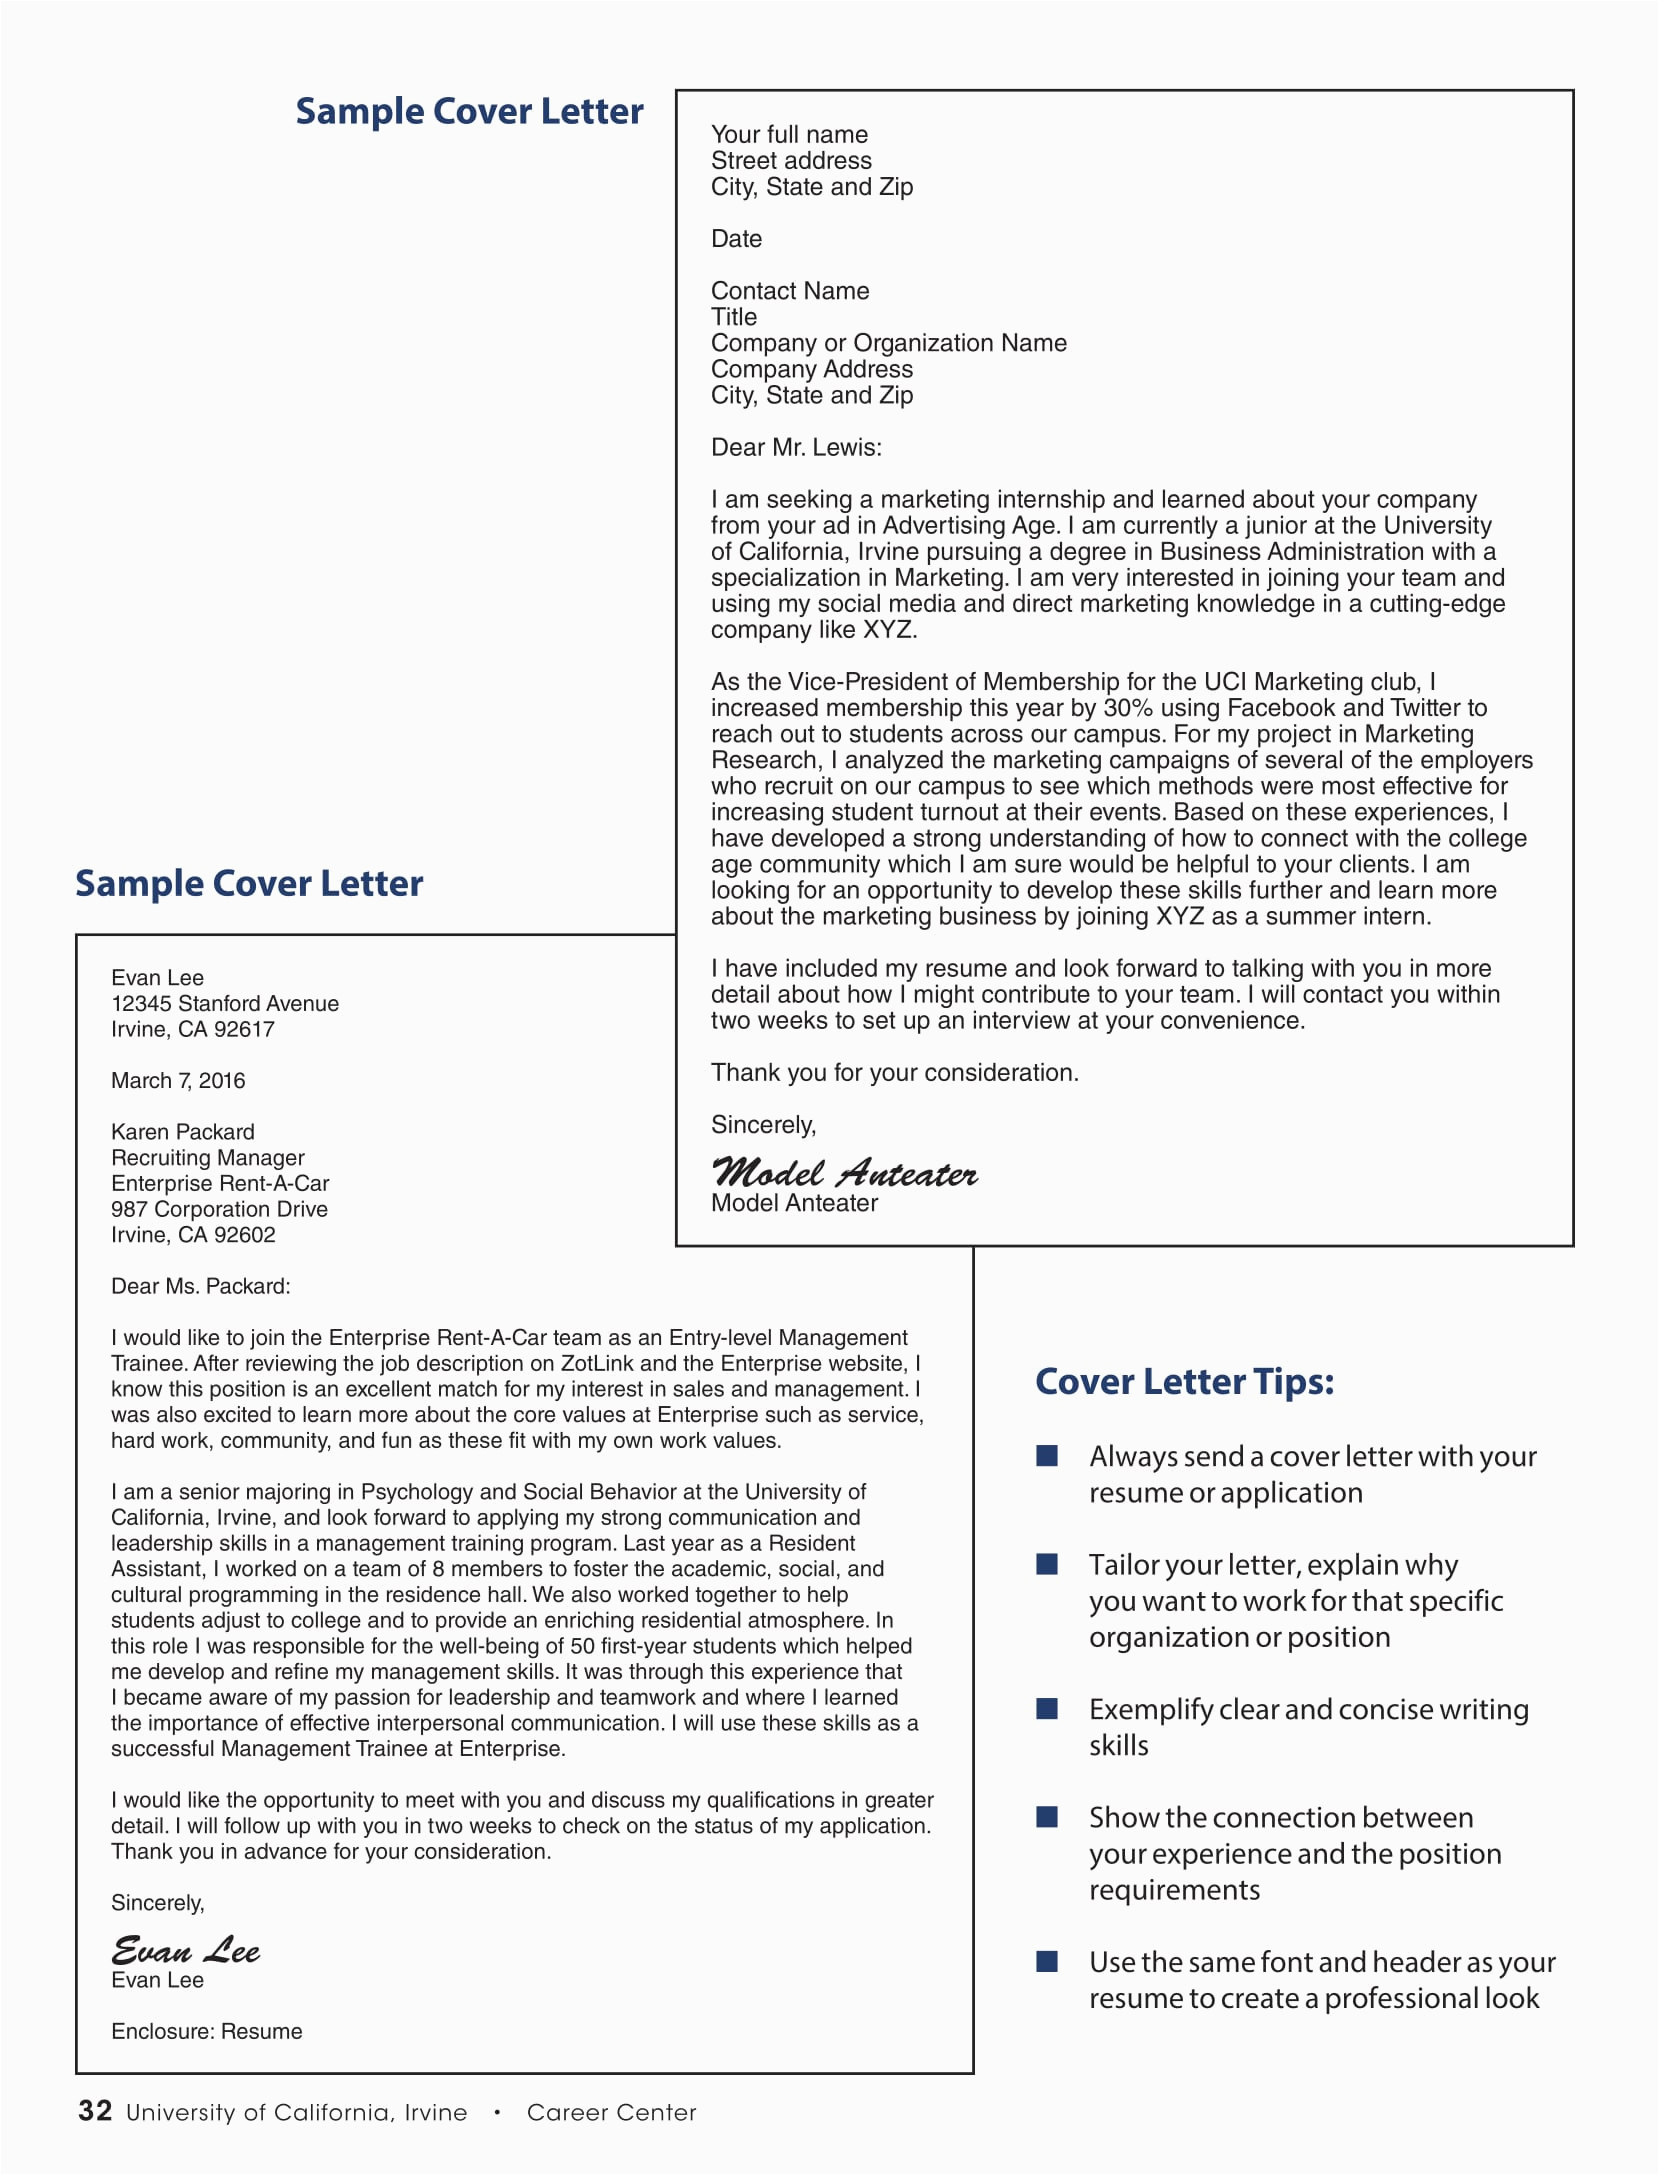 Sample Resume Cover Letter for Job 16 Best Cover Letter Samples for Internship Wisestep